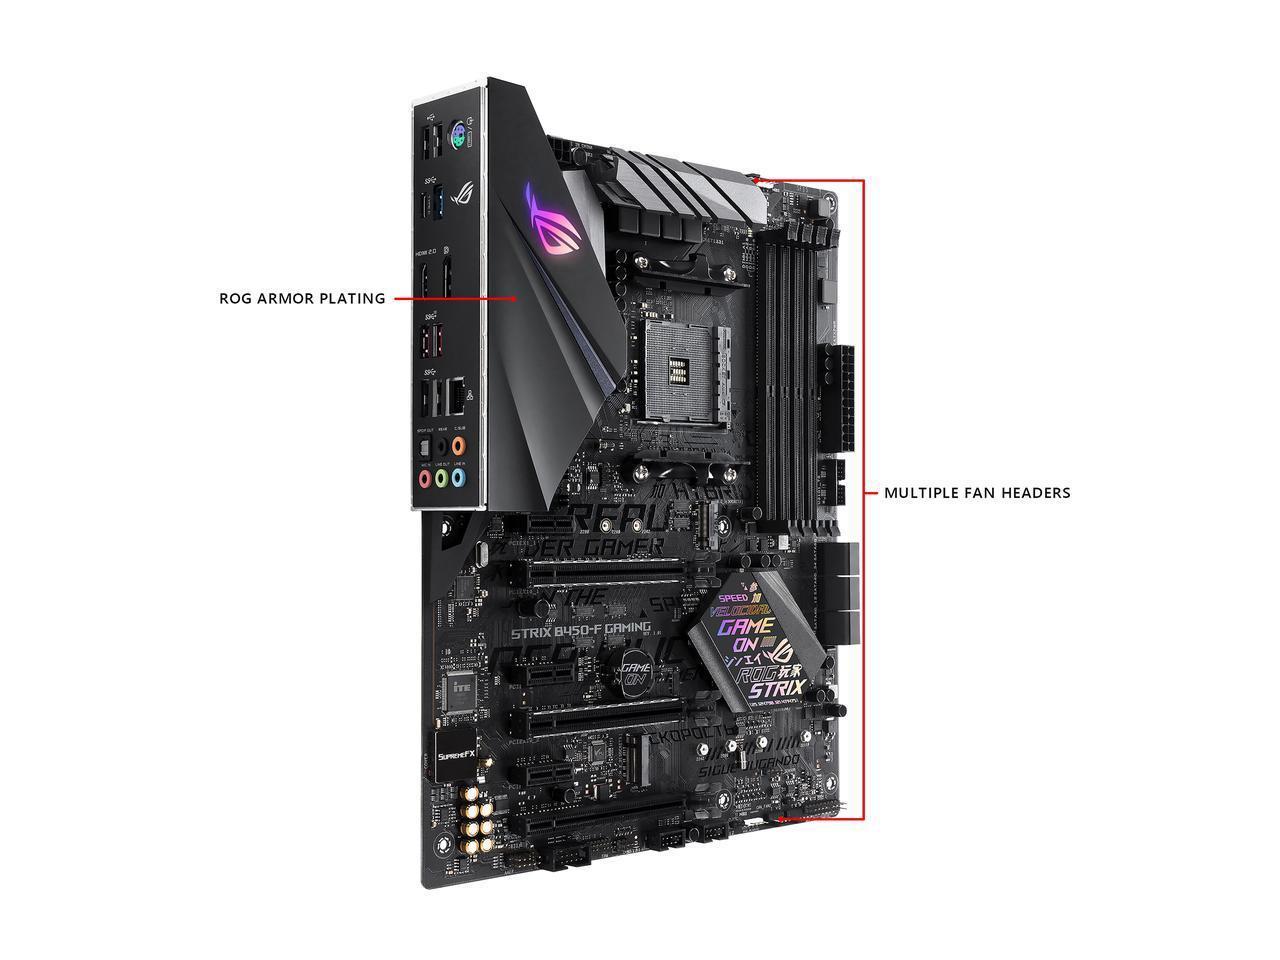 ASUS ROG STRIX B450-F GAMING AMD AM4 B450 ATX Motherboard DDR4